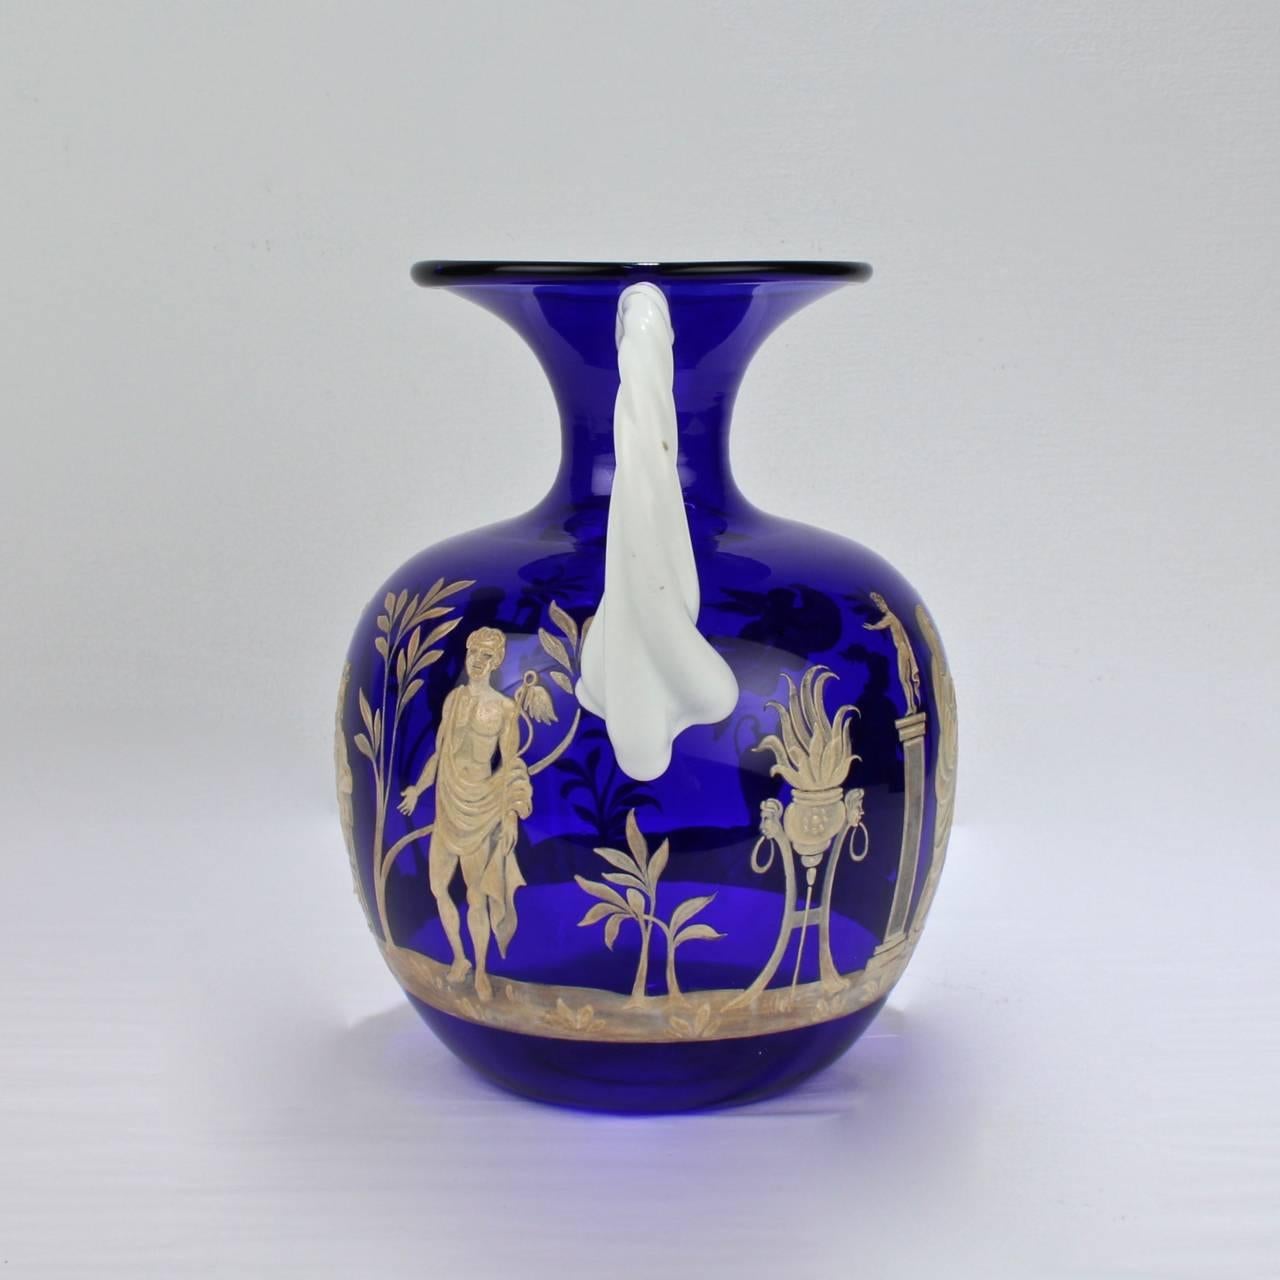 Vase aus blauem und weißem venezianischem Glas mit Emailledekor von Pauly and Co.

Inspiriert von der bedeutenden römischen Kamee-Glasvase 